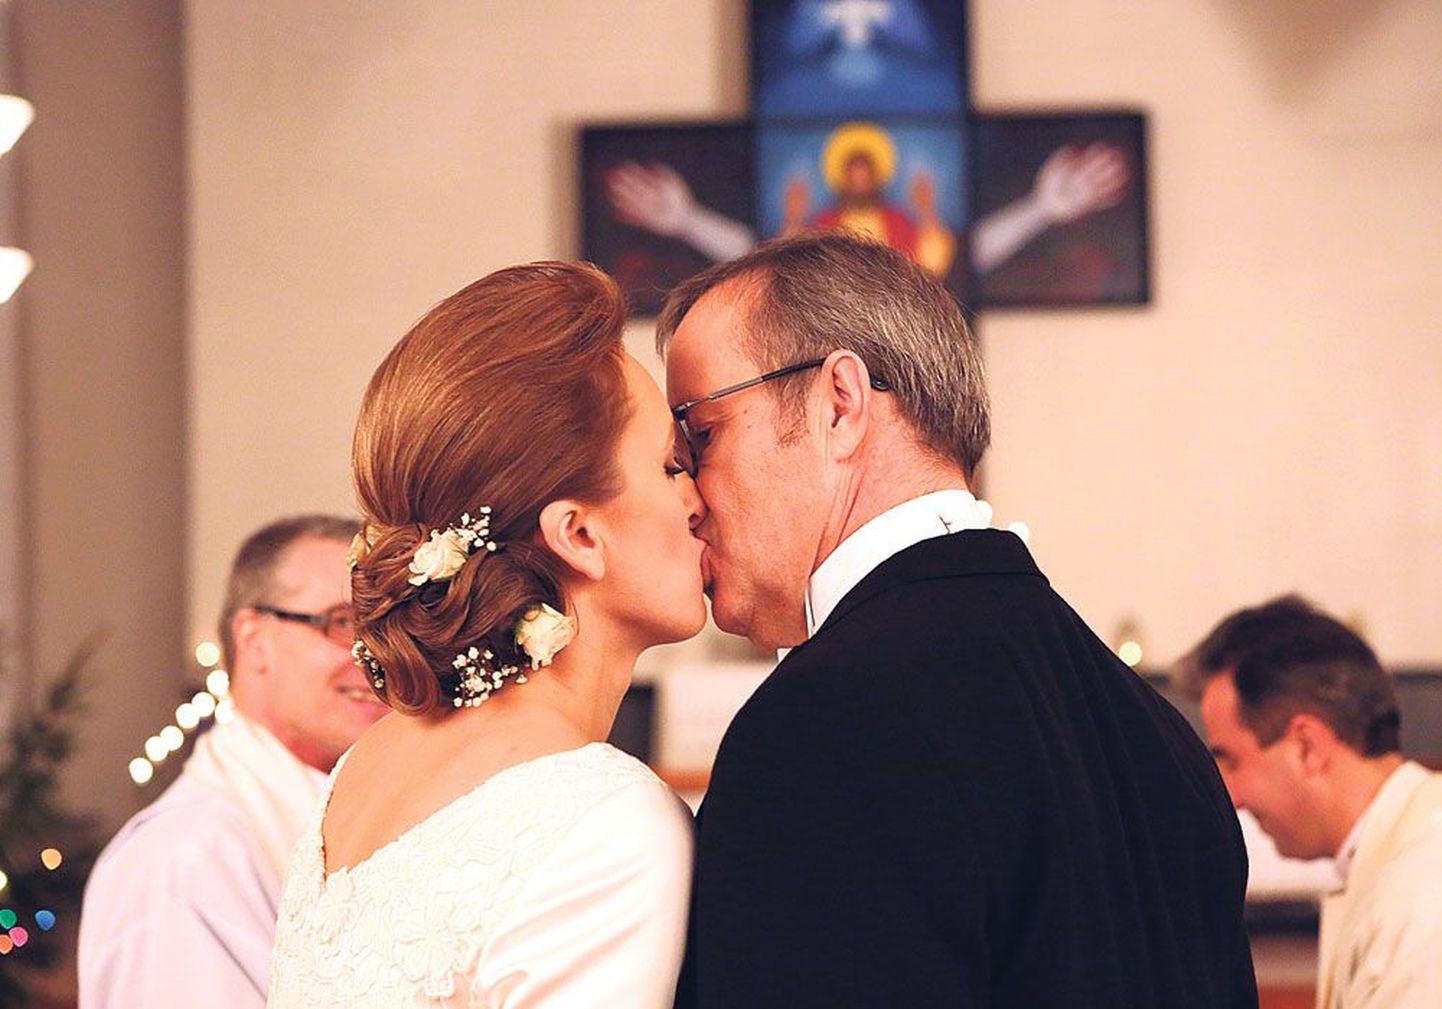 Церемонию церковного брака в церкви Святой Анны провели священнослужители Марко Тийтус и Кристс Калниньш.